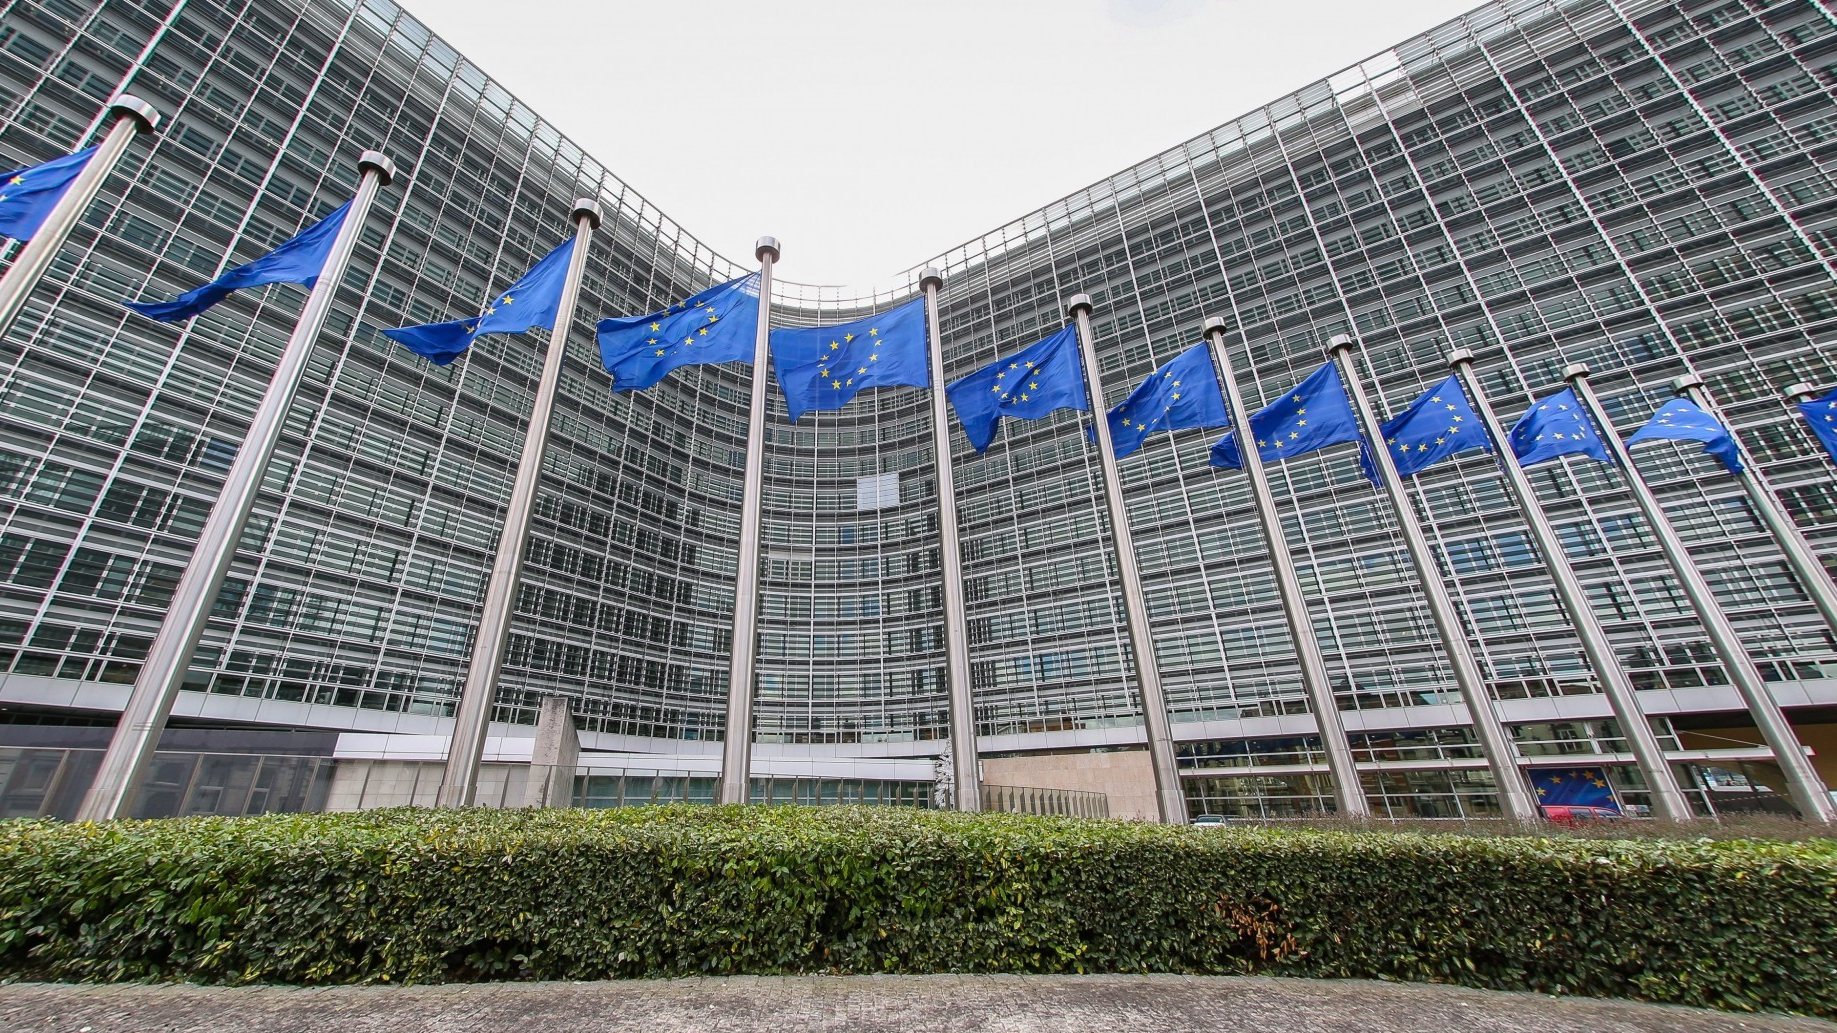 As novas orientações de Bruxelas permitem aos Estados-Membros apoiar as regiões que enfrentam desafios de transição